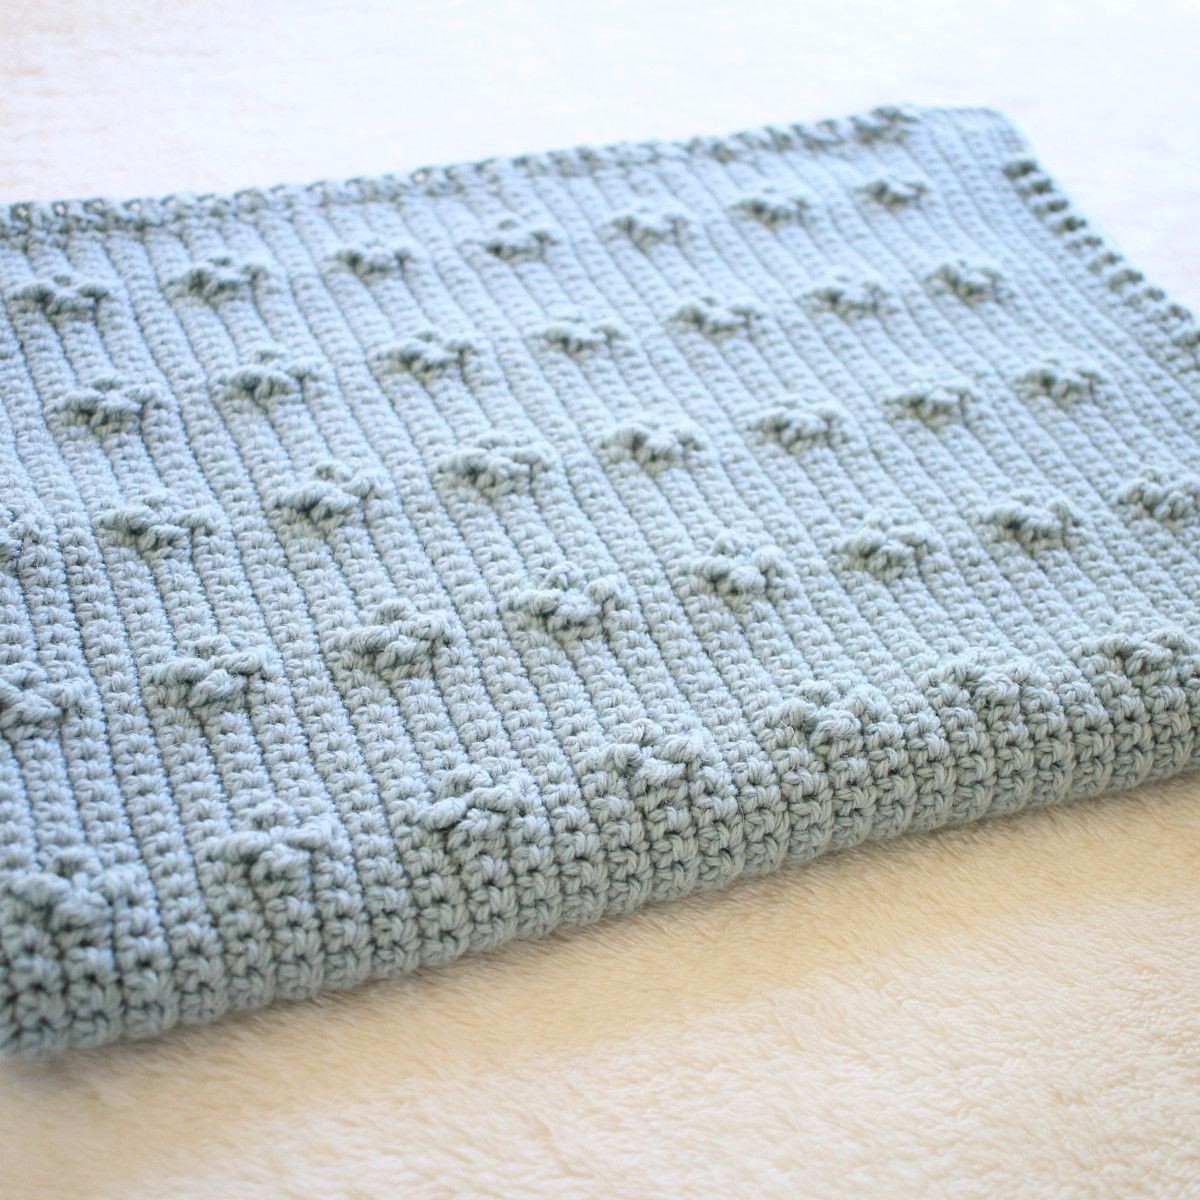 Blue crochet blanket